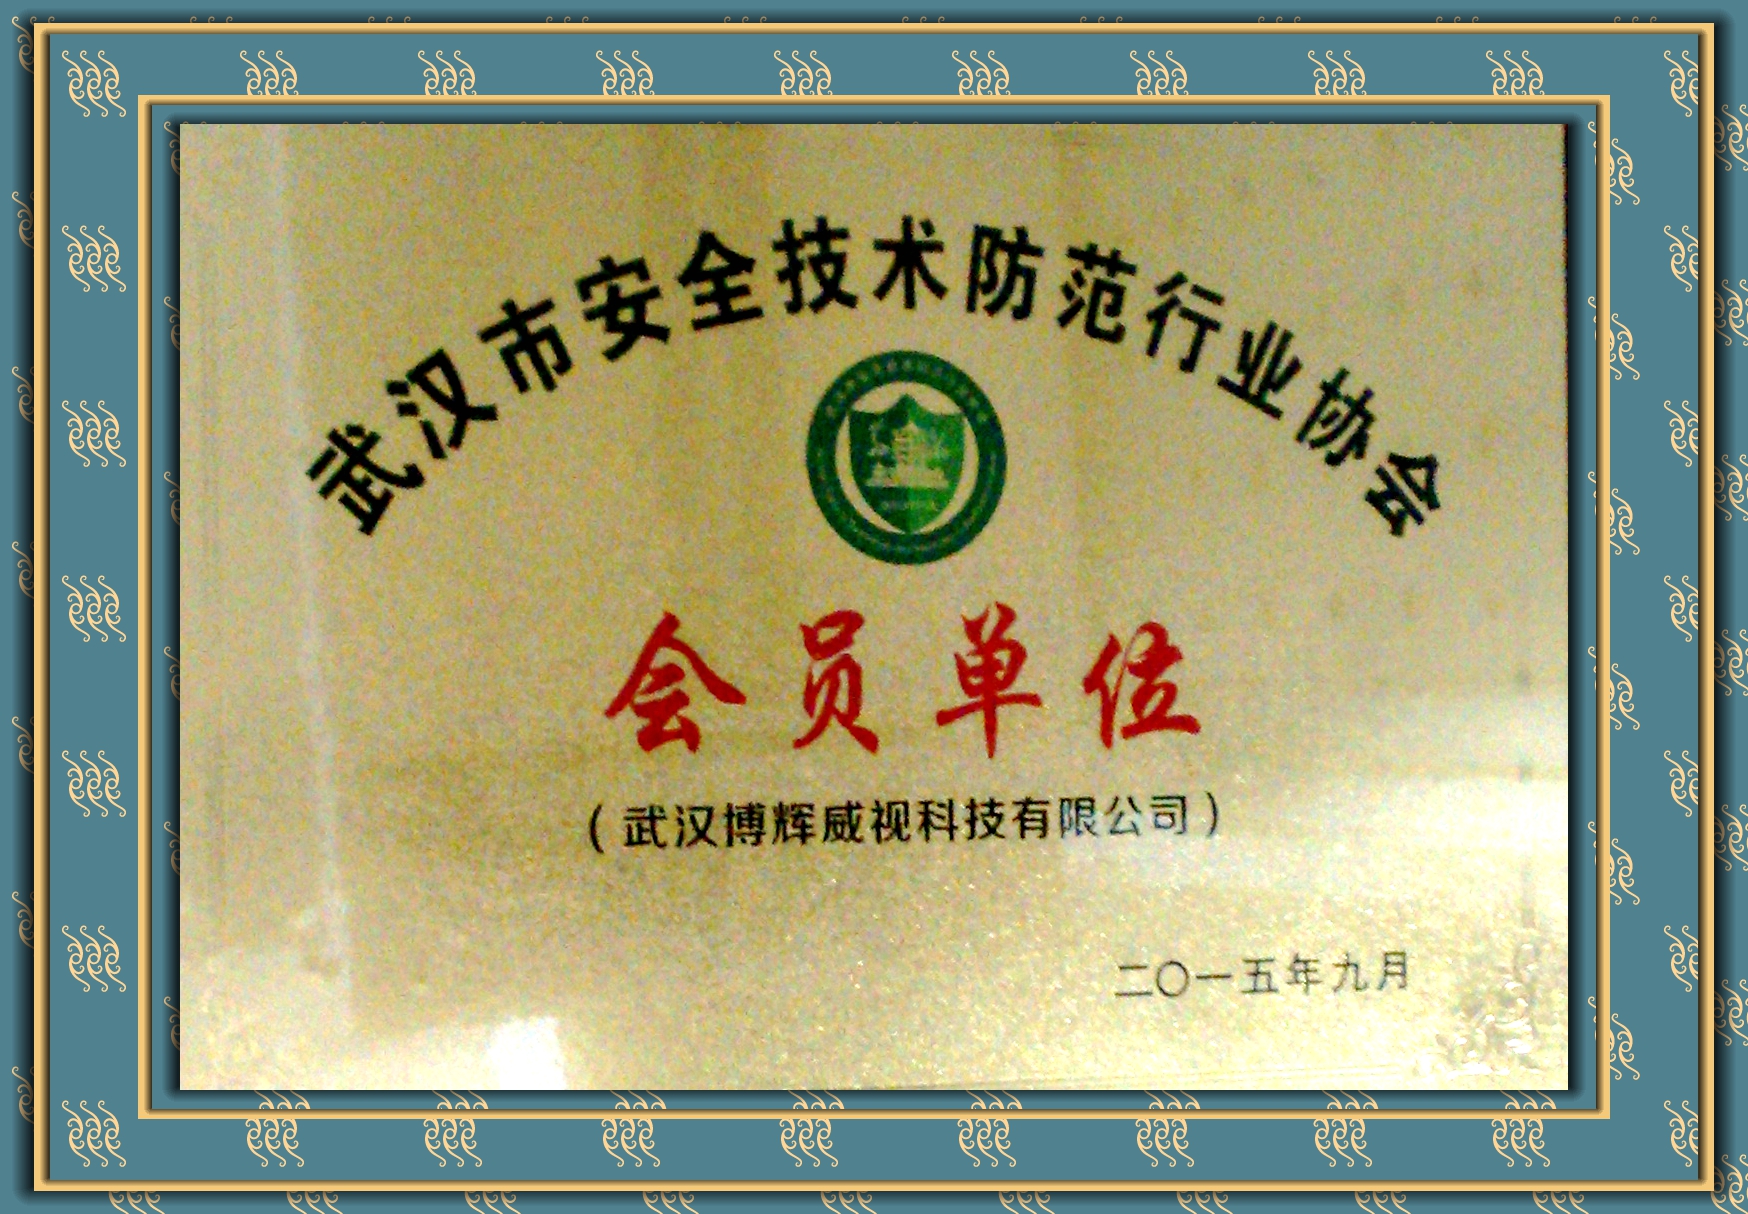 博輝威視武漢安全技術防范協會會員單位